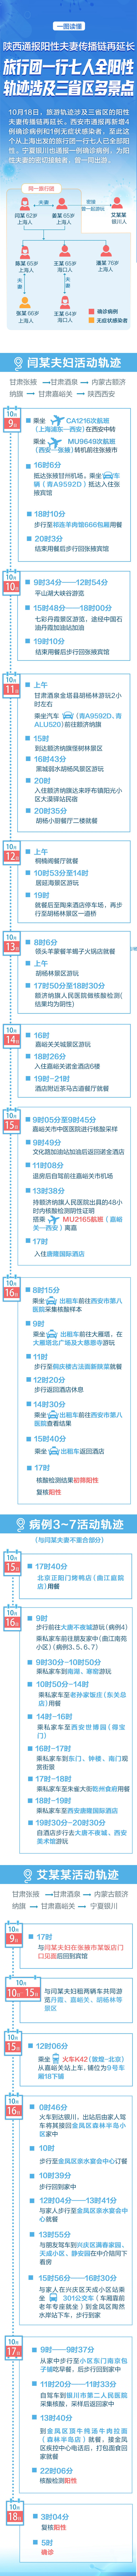 2名上海游客非检测异常后私自离开 上海旅行团活动轨迹最新消息！上海旅行团到西安旅游7人阳性